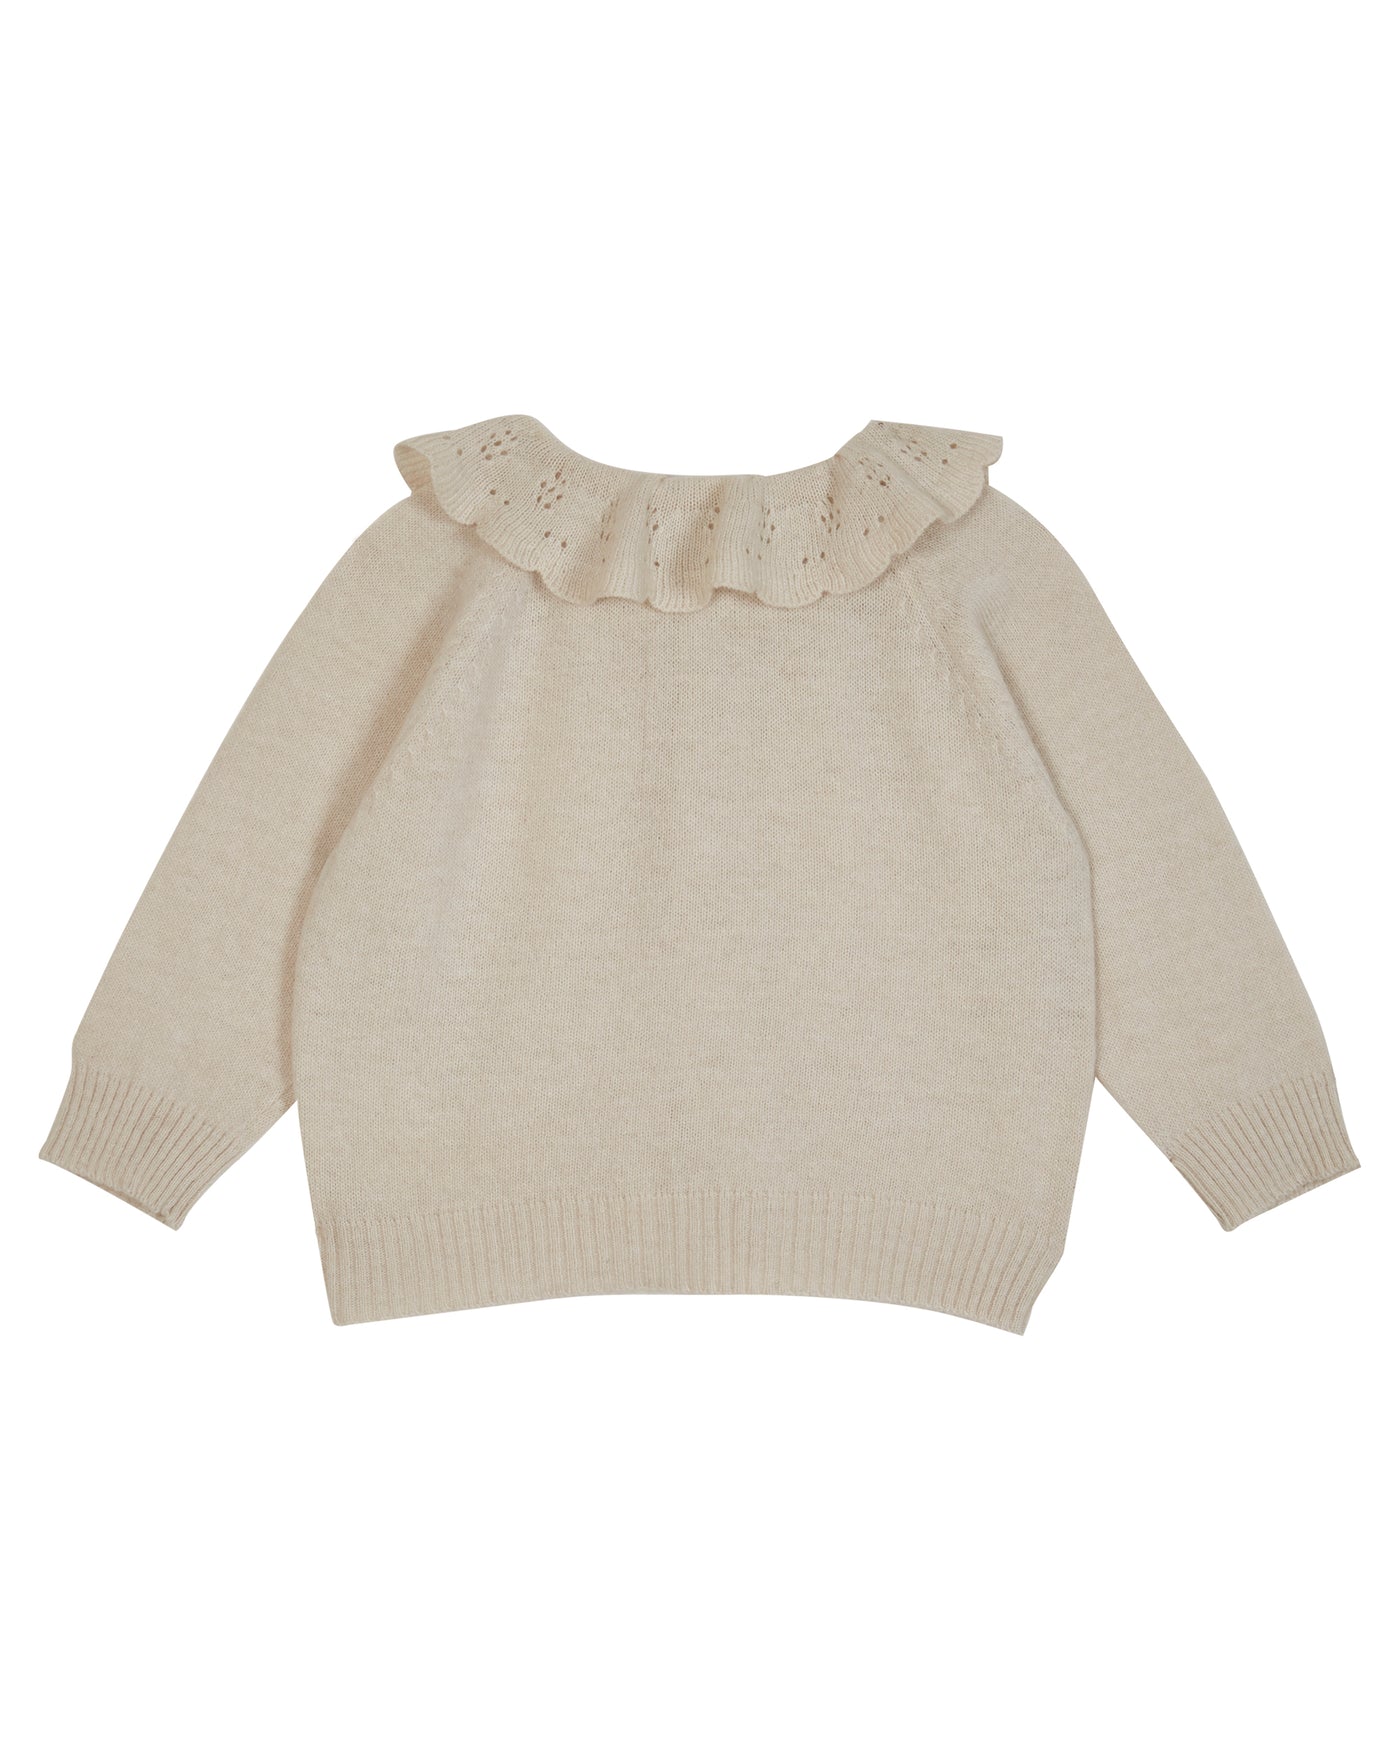 Girls Baby Sweater